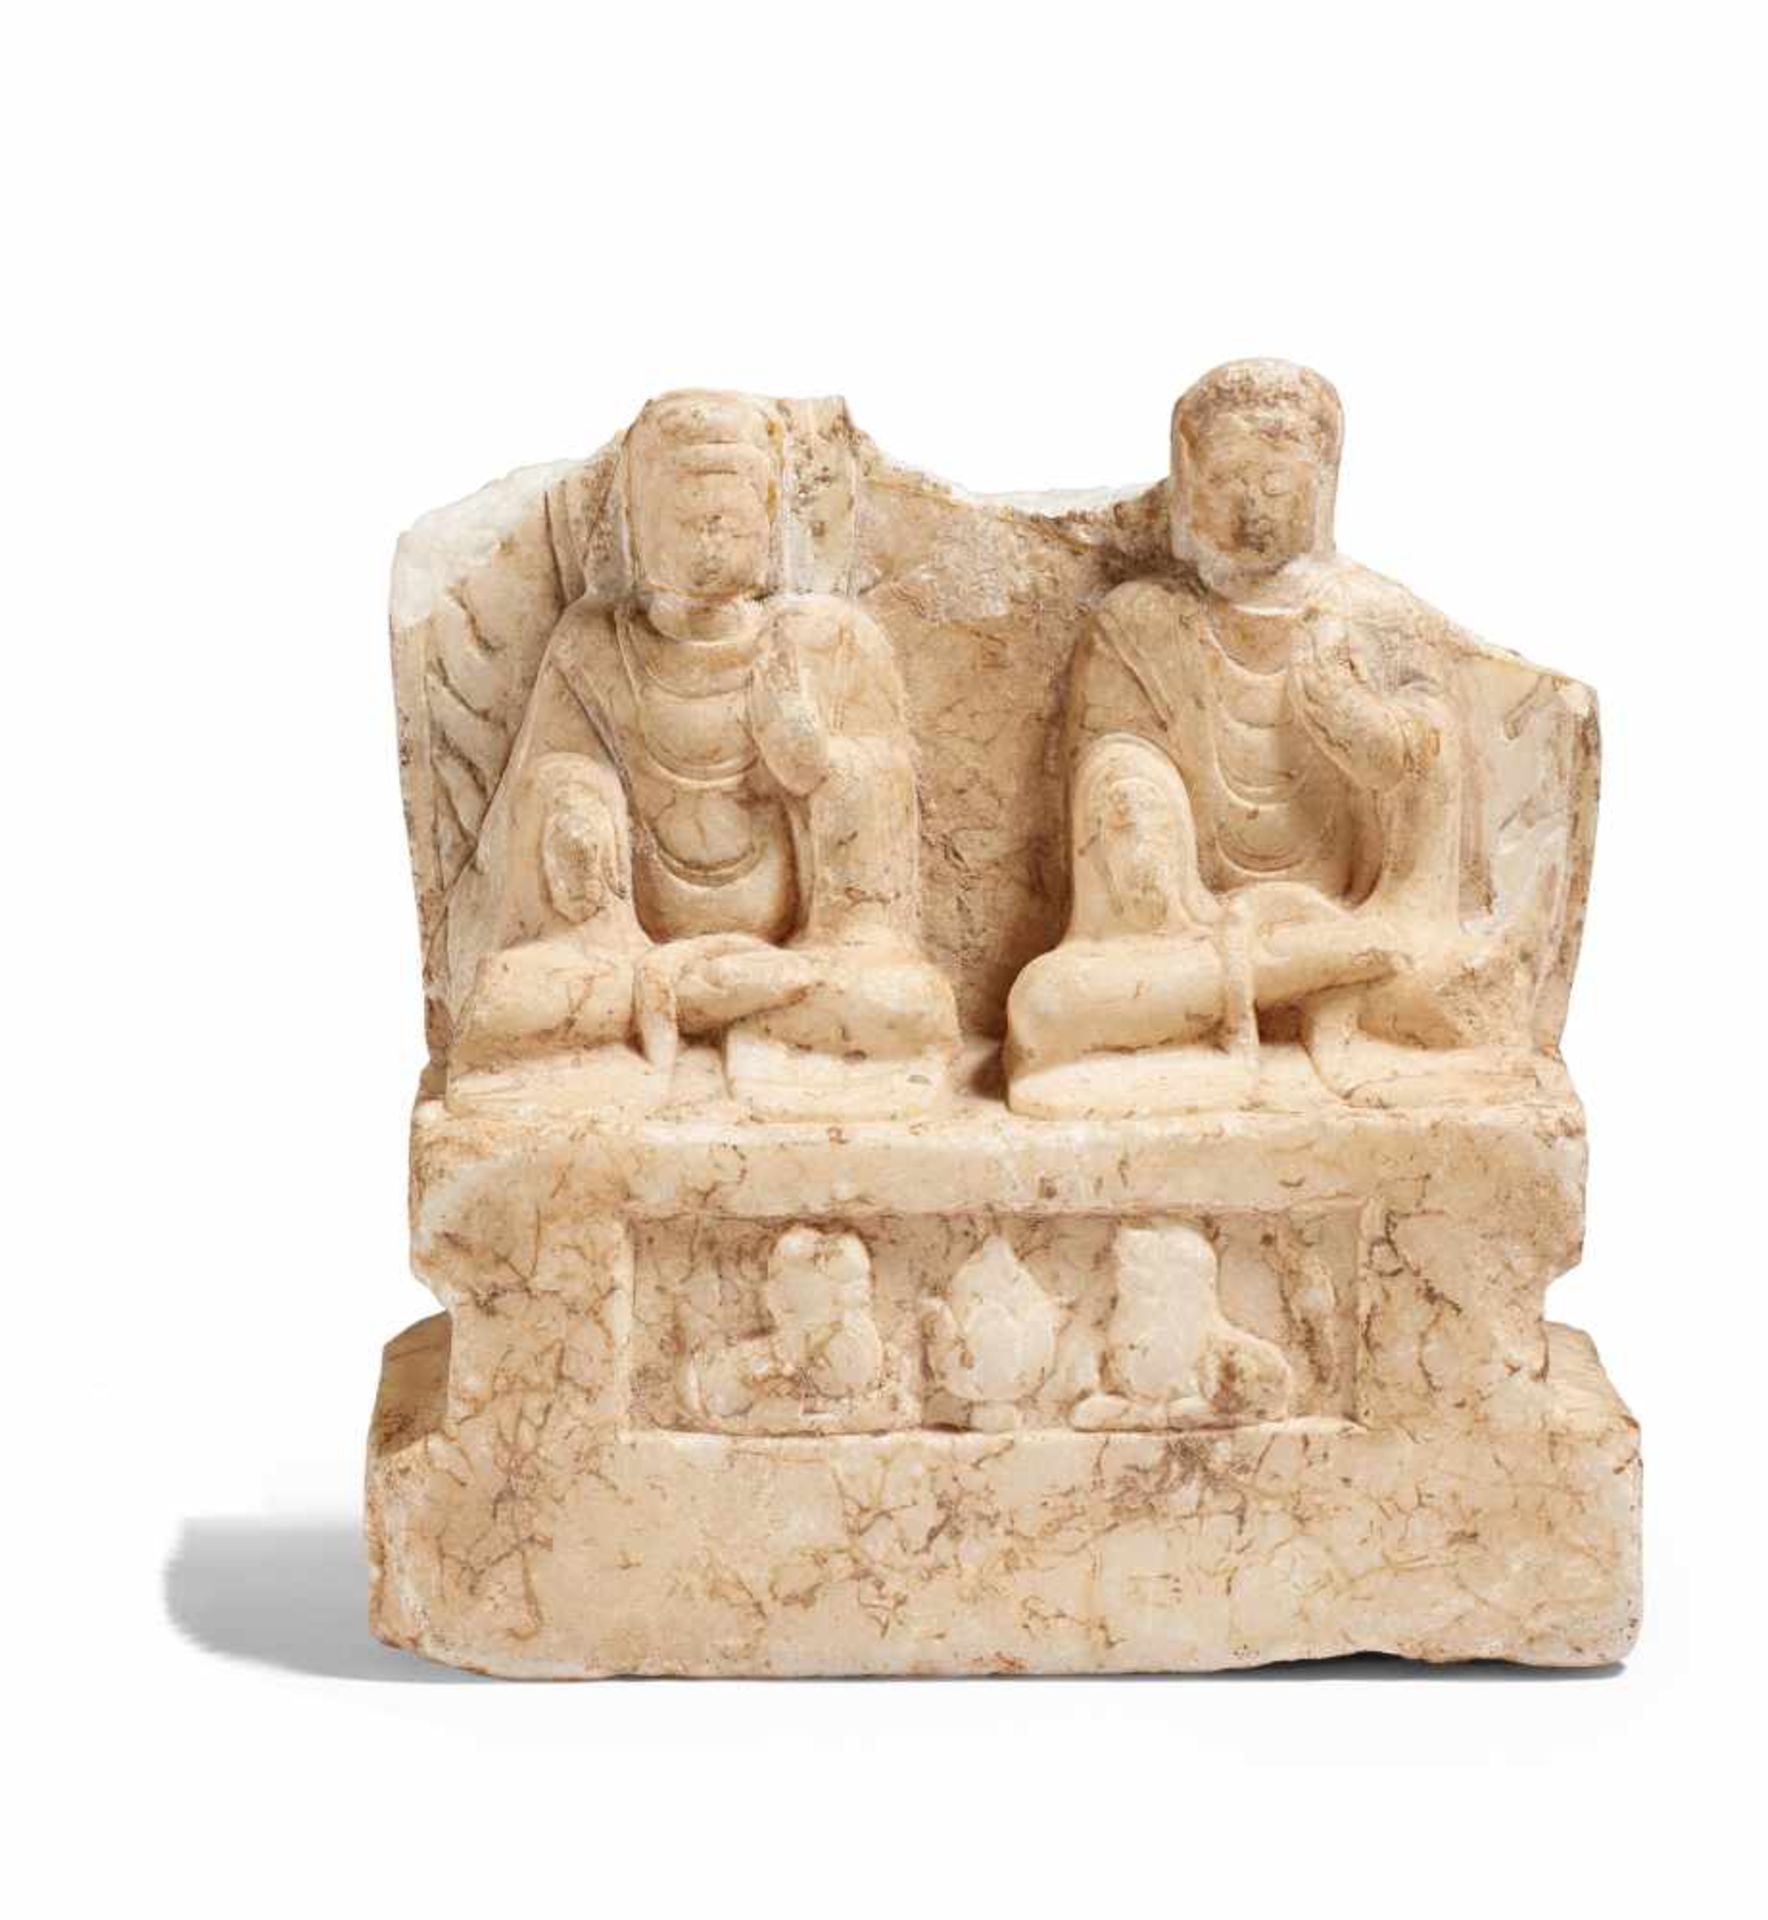 STELENFRAGMENT MIT ZWEI DARSTELLUNGEN DES SITZENDEN BUDDHA. China. Südliche Qi-Dynastie (479-502).